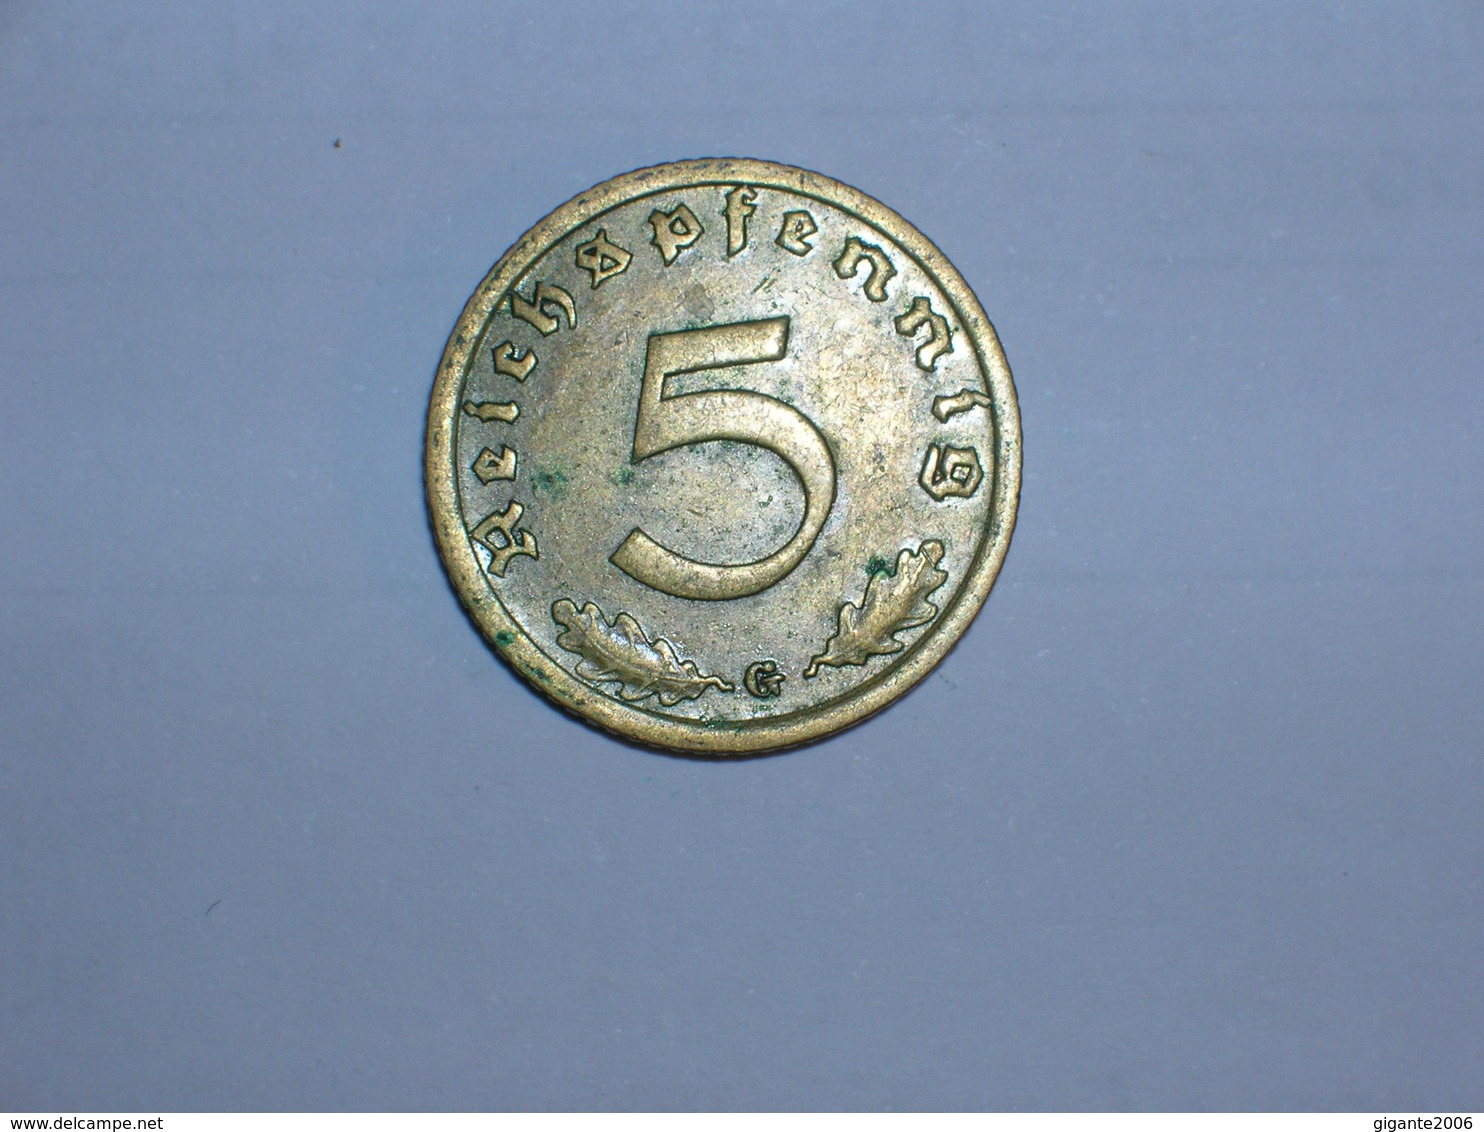 ALEMANIA- 5 PFENNIG 1938 G (902) - 5 Reichspfennig